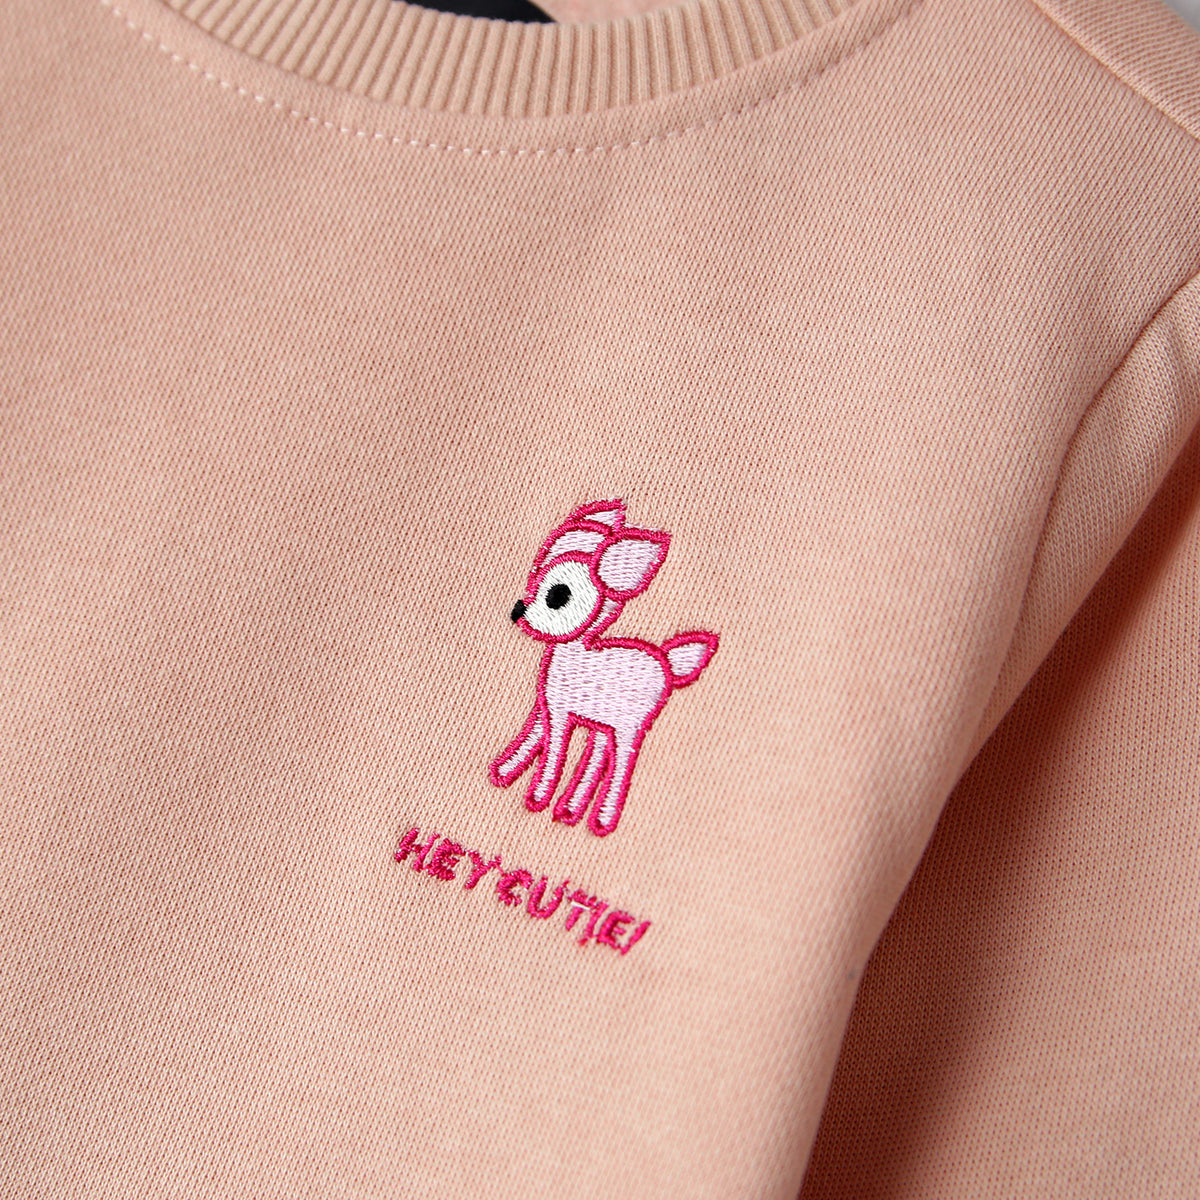 Premium Quality Girls Embroidered Fleece SweatShirt